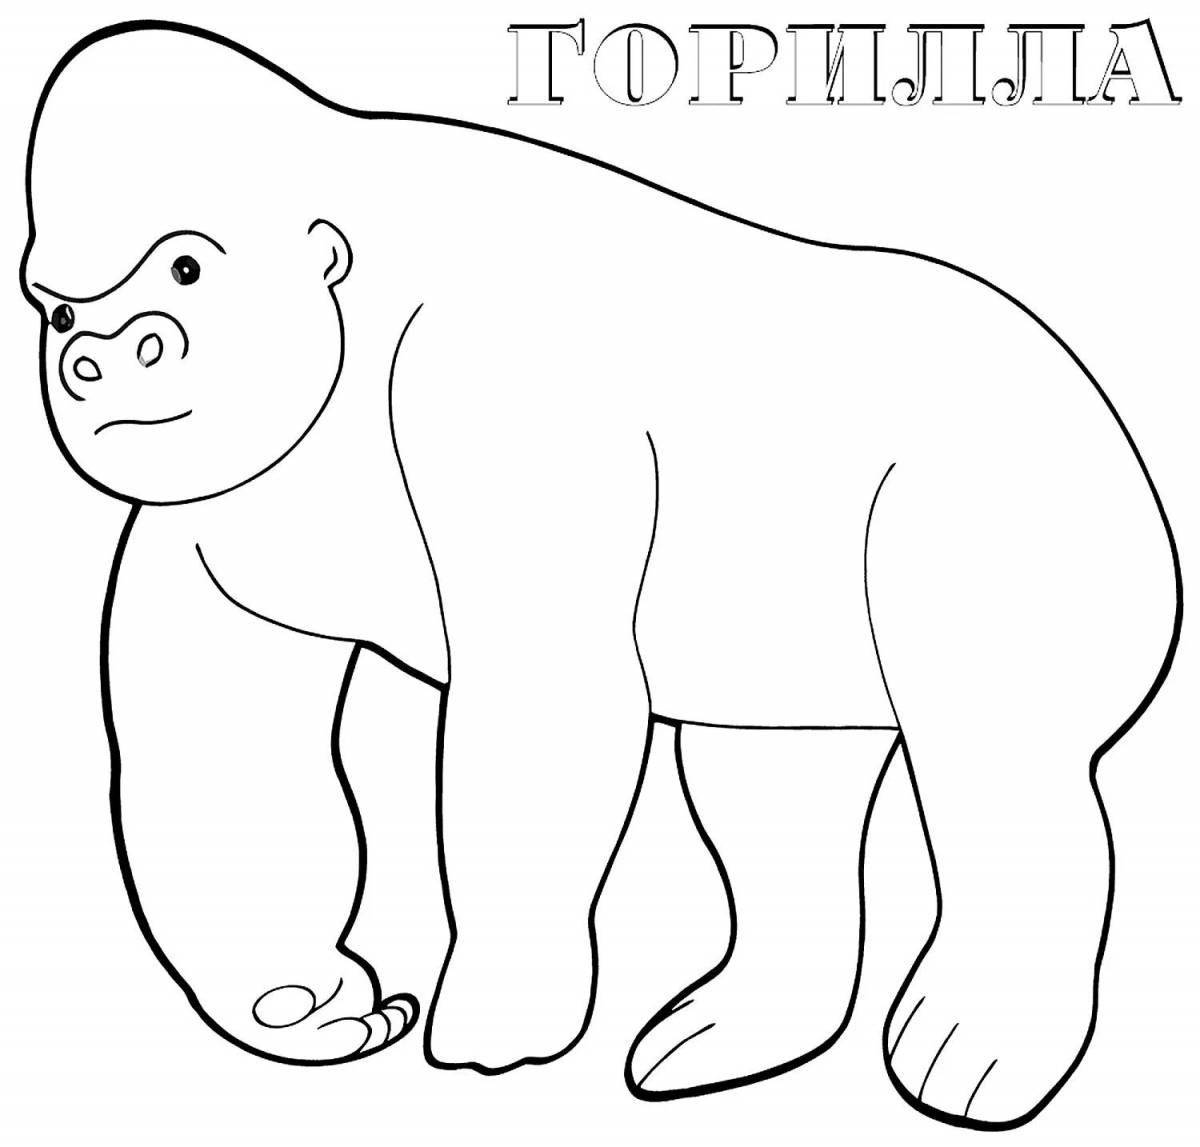 Увлекательная раскраска гориллы для детей